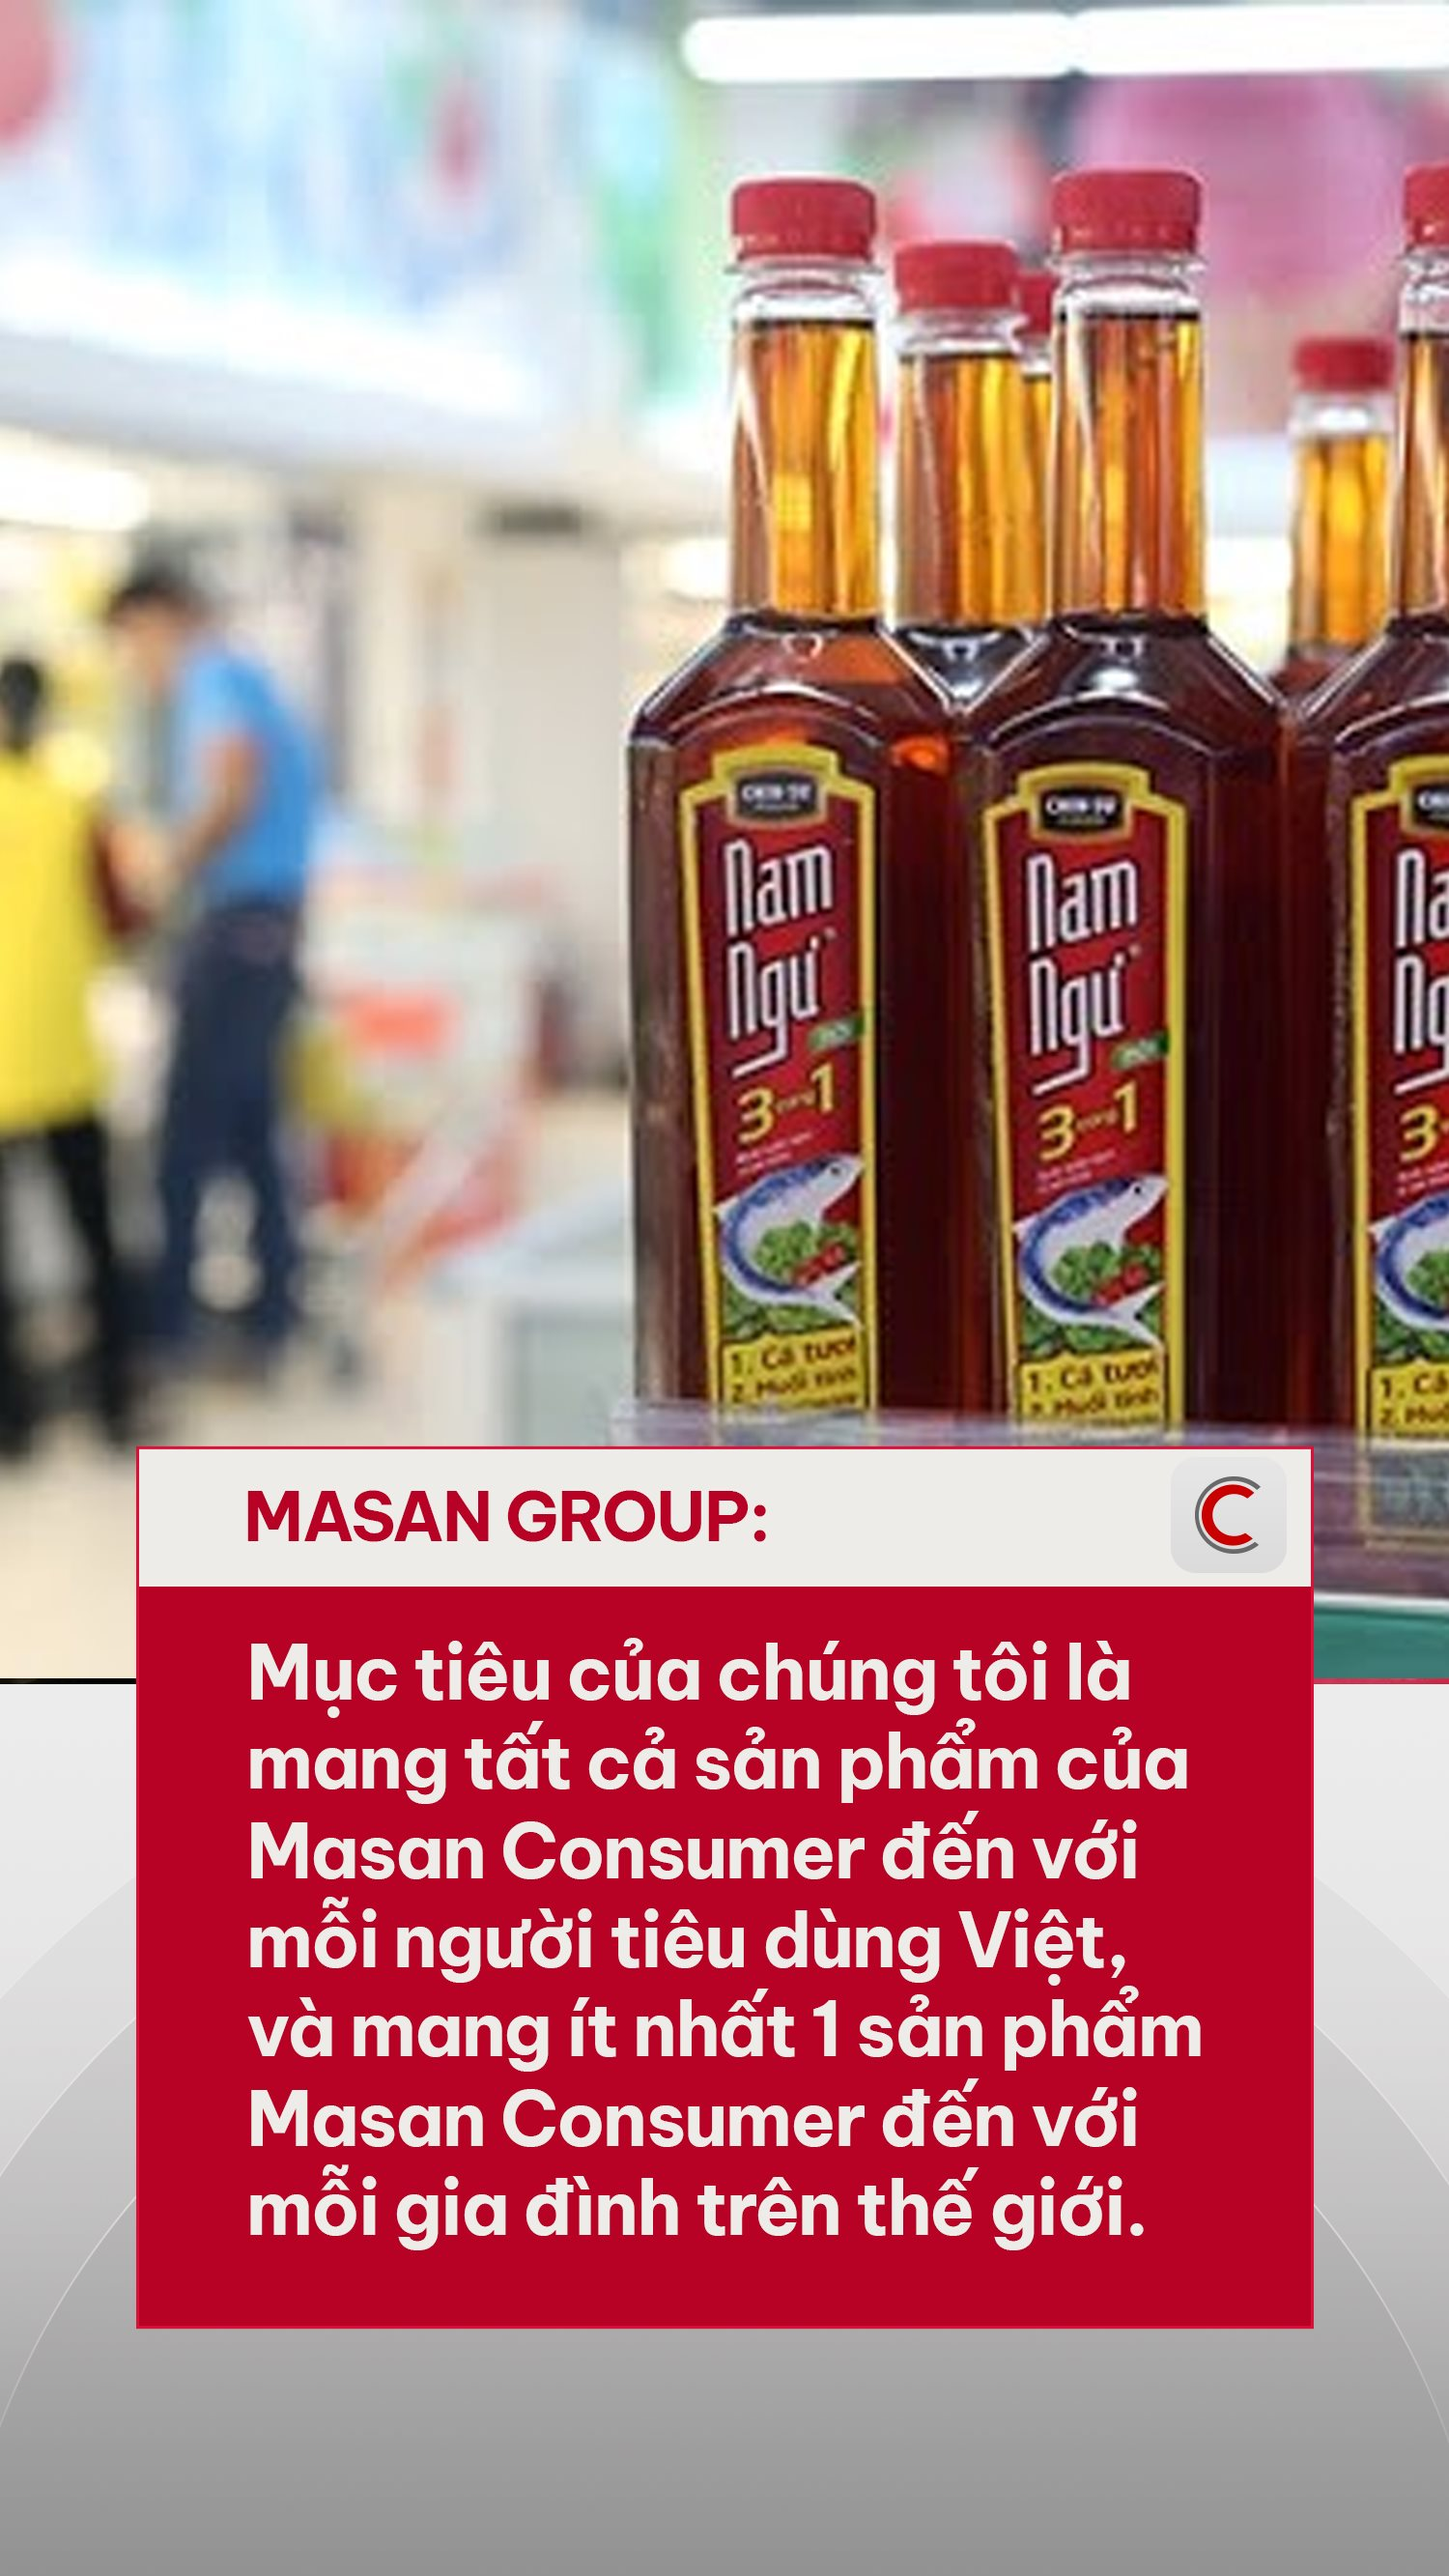 Cứ 10 bát nước mắm thì 7 bát của Masan, tỷ phú Nguyễn Đăng Quang hé lộ tham vọng bước chân ra thị trường 3.100 tỷ USD - Ảnh 2.